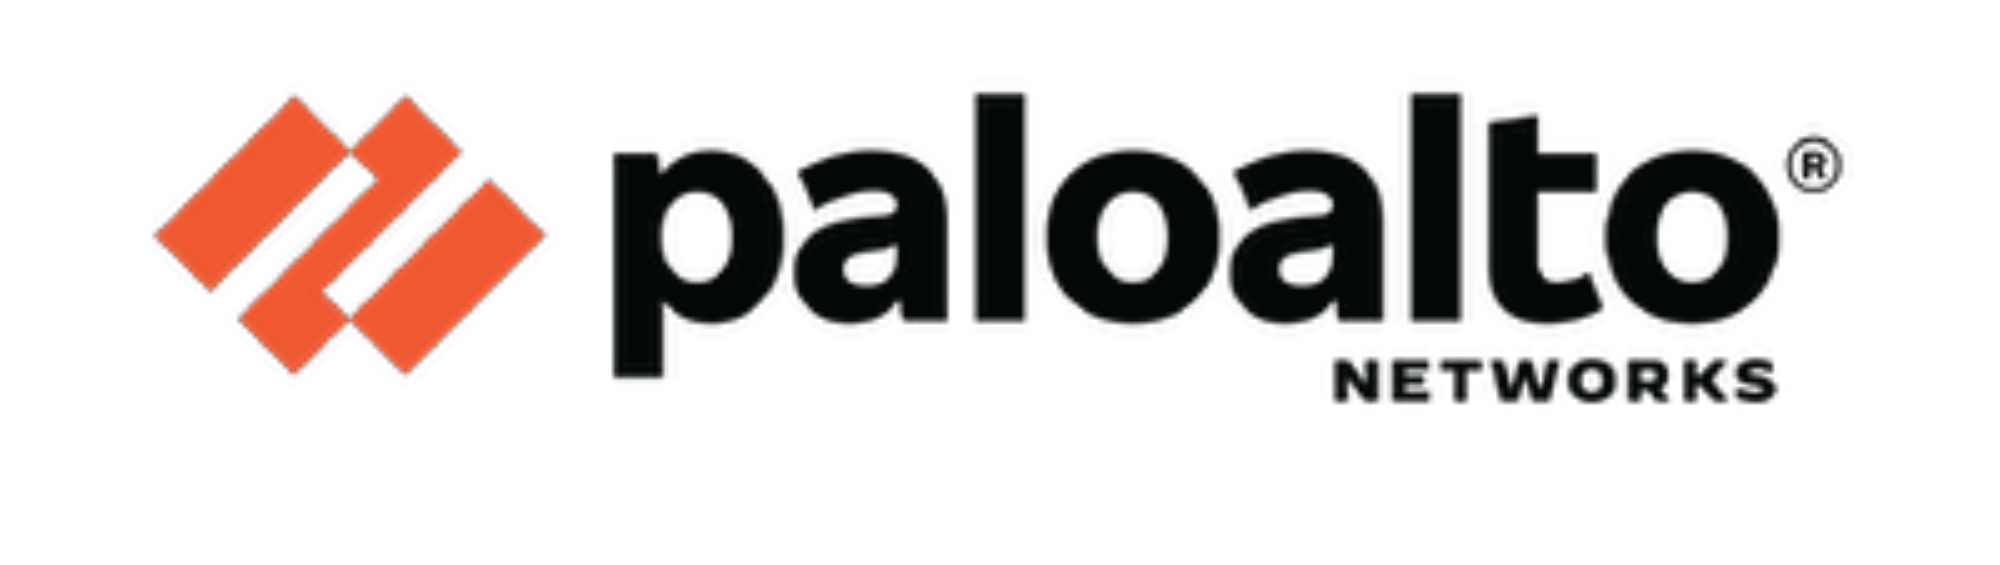 PaloAltoNetworks